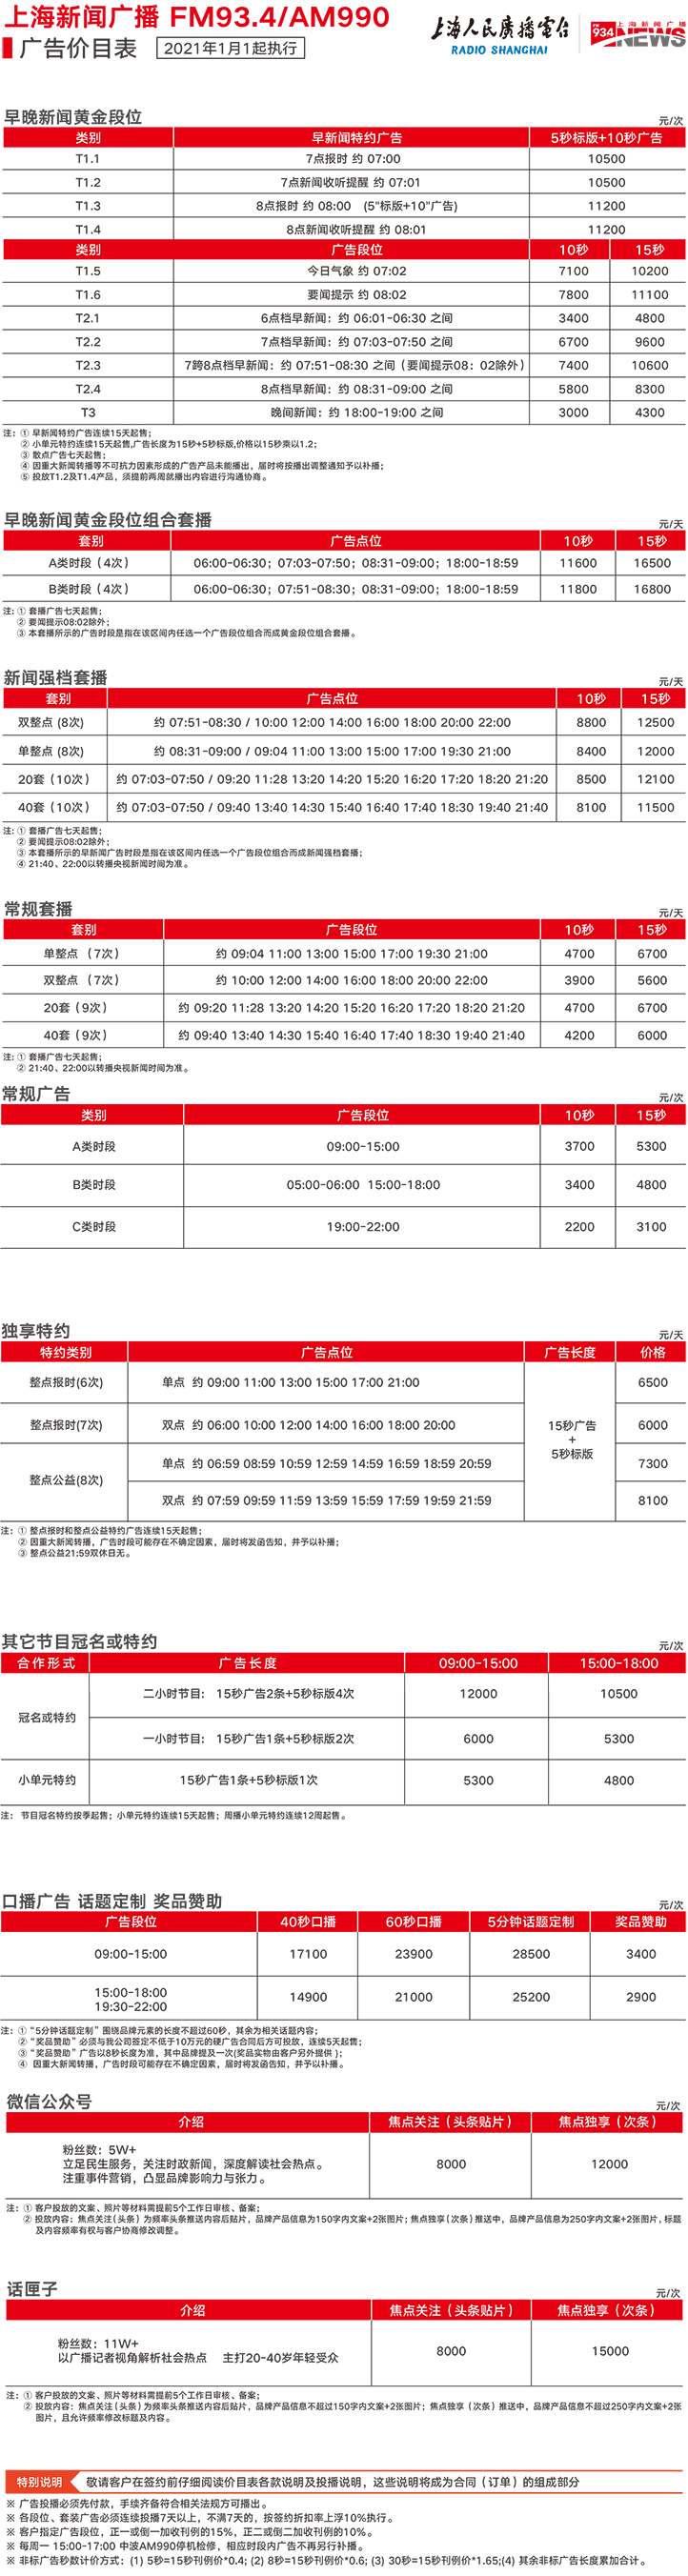 2021上海人民广播电台新闻990 AM990_FM93.4广告报价表.jpg